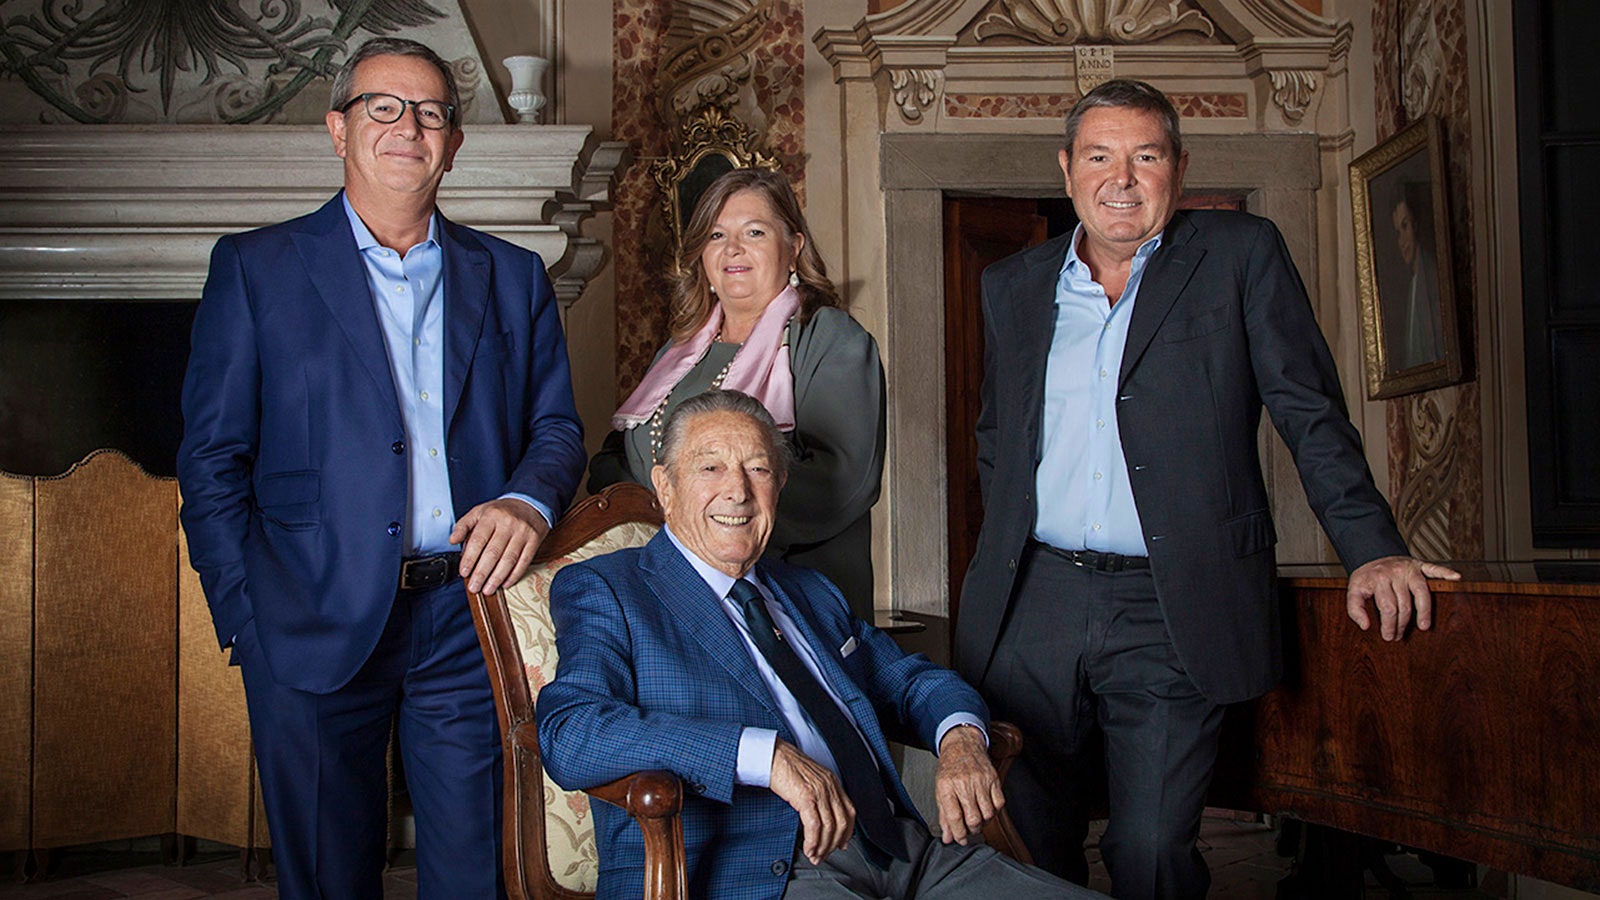  Franco Ziliani se reúne sentado con sus hijos - Arturo, izquierda, Cristina y Paolo - que ahora dirigen la bodega de vinos espumosos que él cofundó.